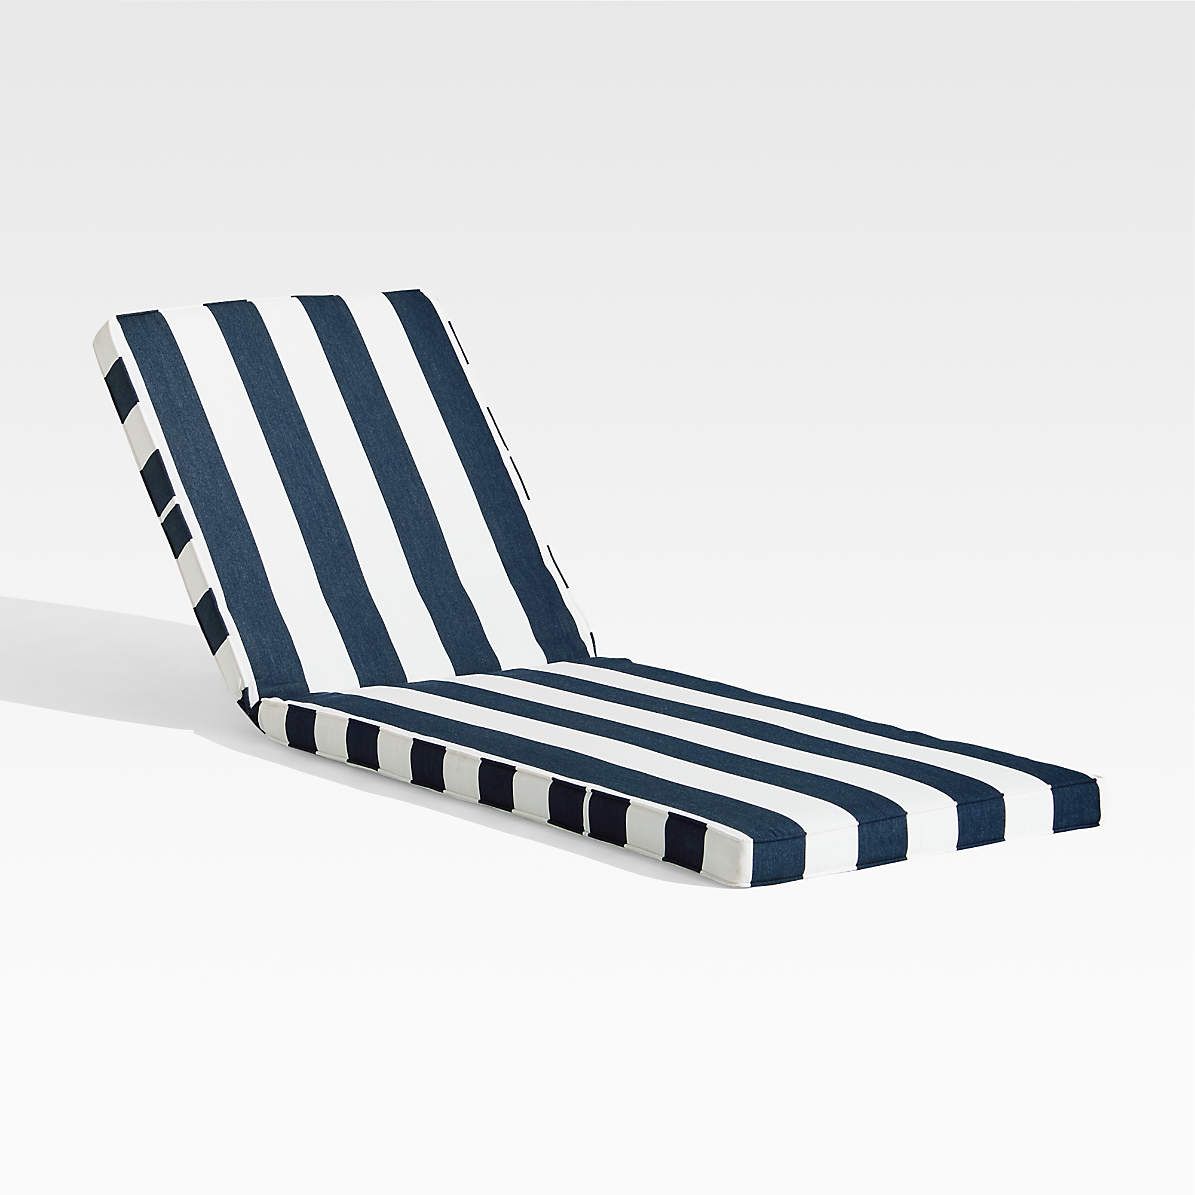 Regatta Navy Cabana Stripe Sunbrella, Sunbrella Lounge Chair Cushions Navy